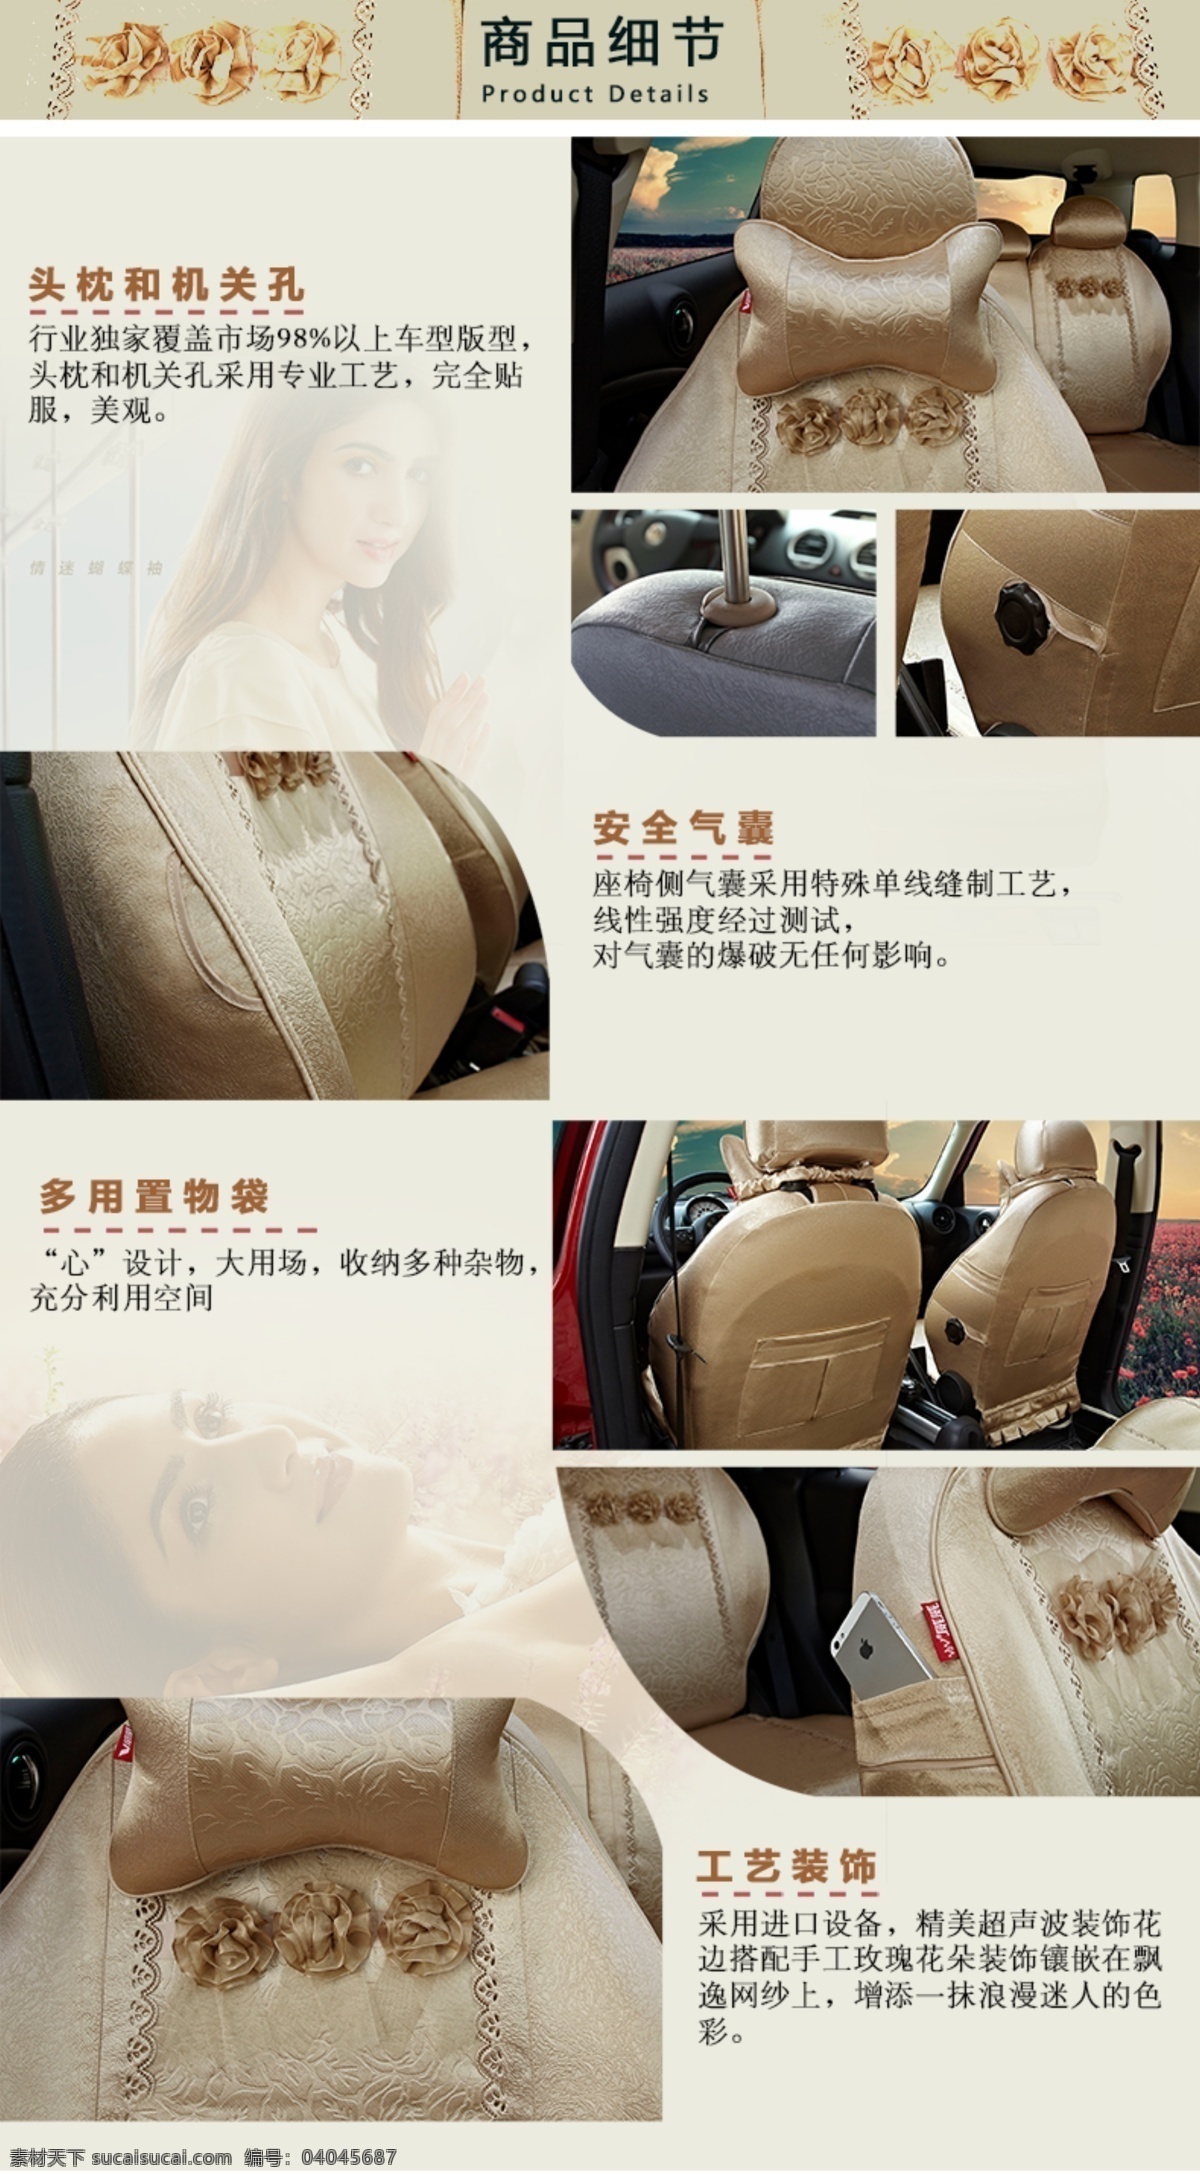 女性 汽车 座套 产品 细节 模板 商品 风格 展示 淘宝 描述 详情 排版 原创设计 原创淘宝设计